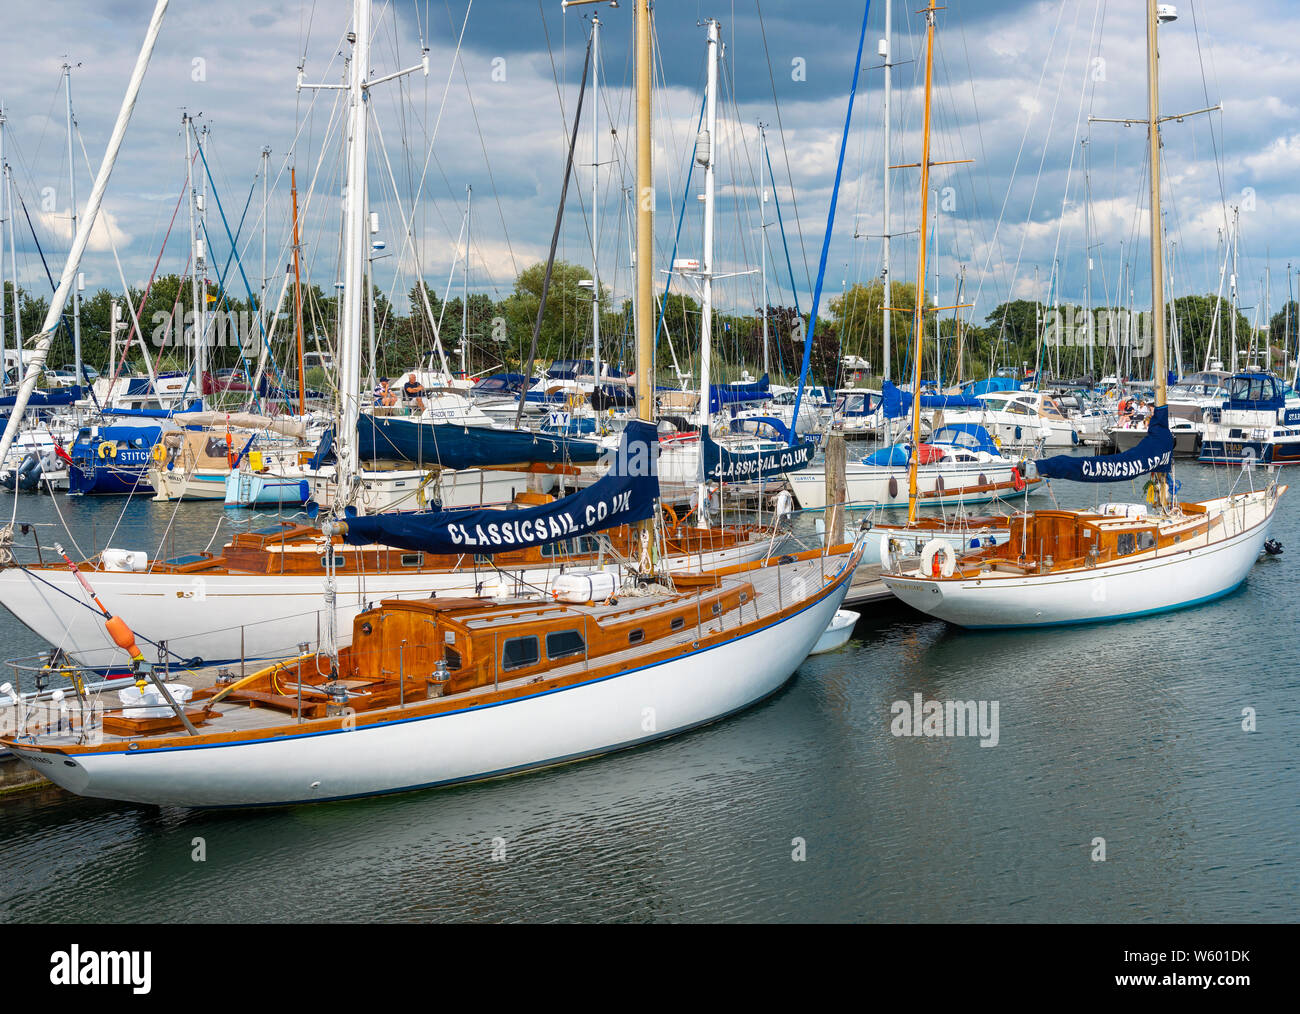 Traditionelle oder klassische Holz- segeln Boote in der Premier Marinas - Chichester Marina, Chichester Harbour, West Sussex, England, Großbritannien Stockfoto